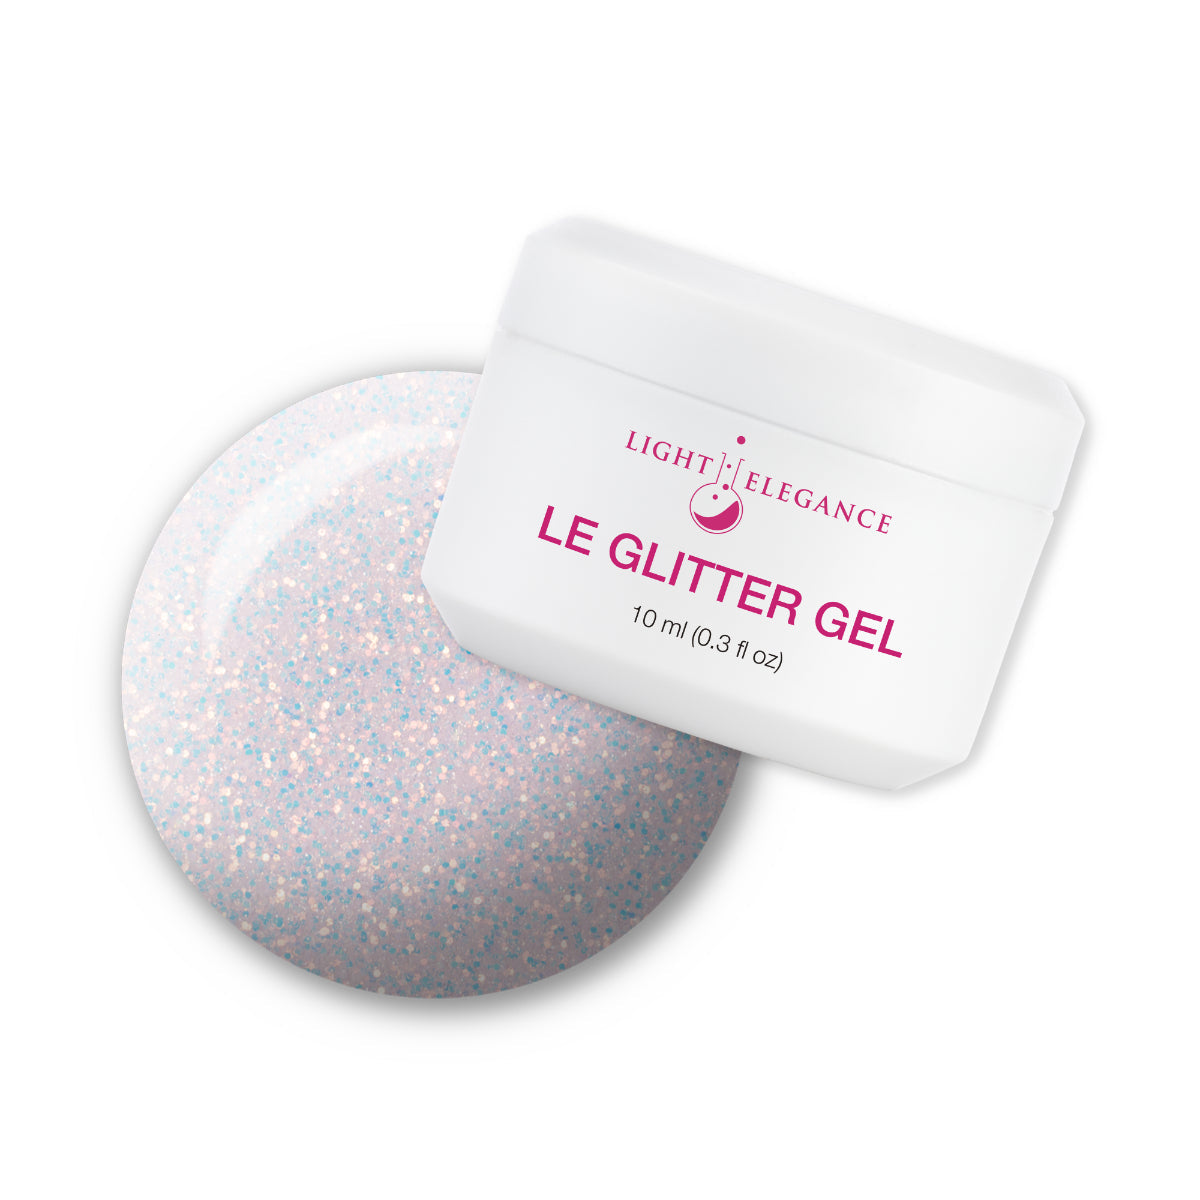 Light Elegance Glitter Gel - She's a Star :: New Packaging